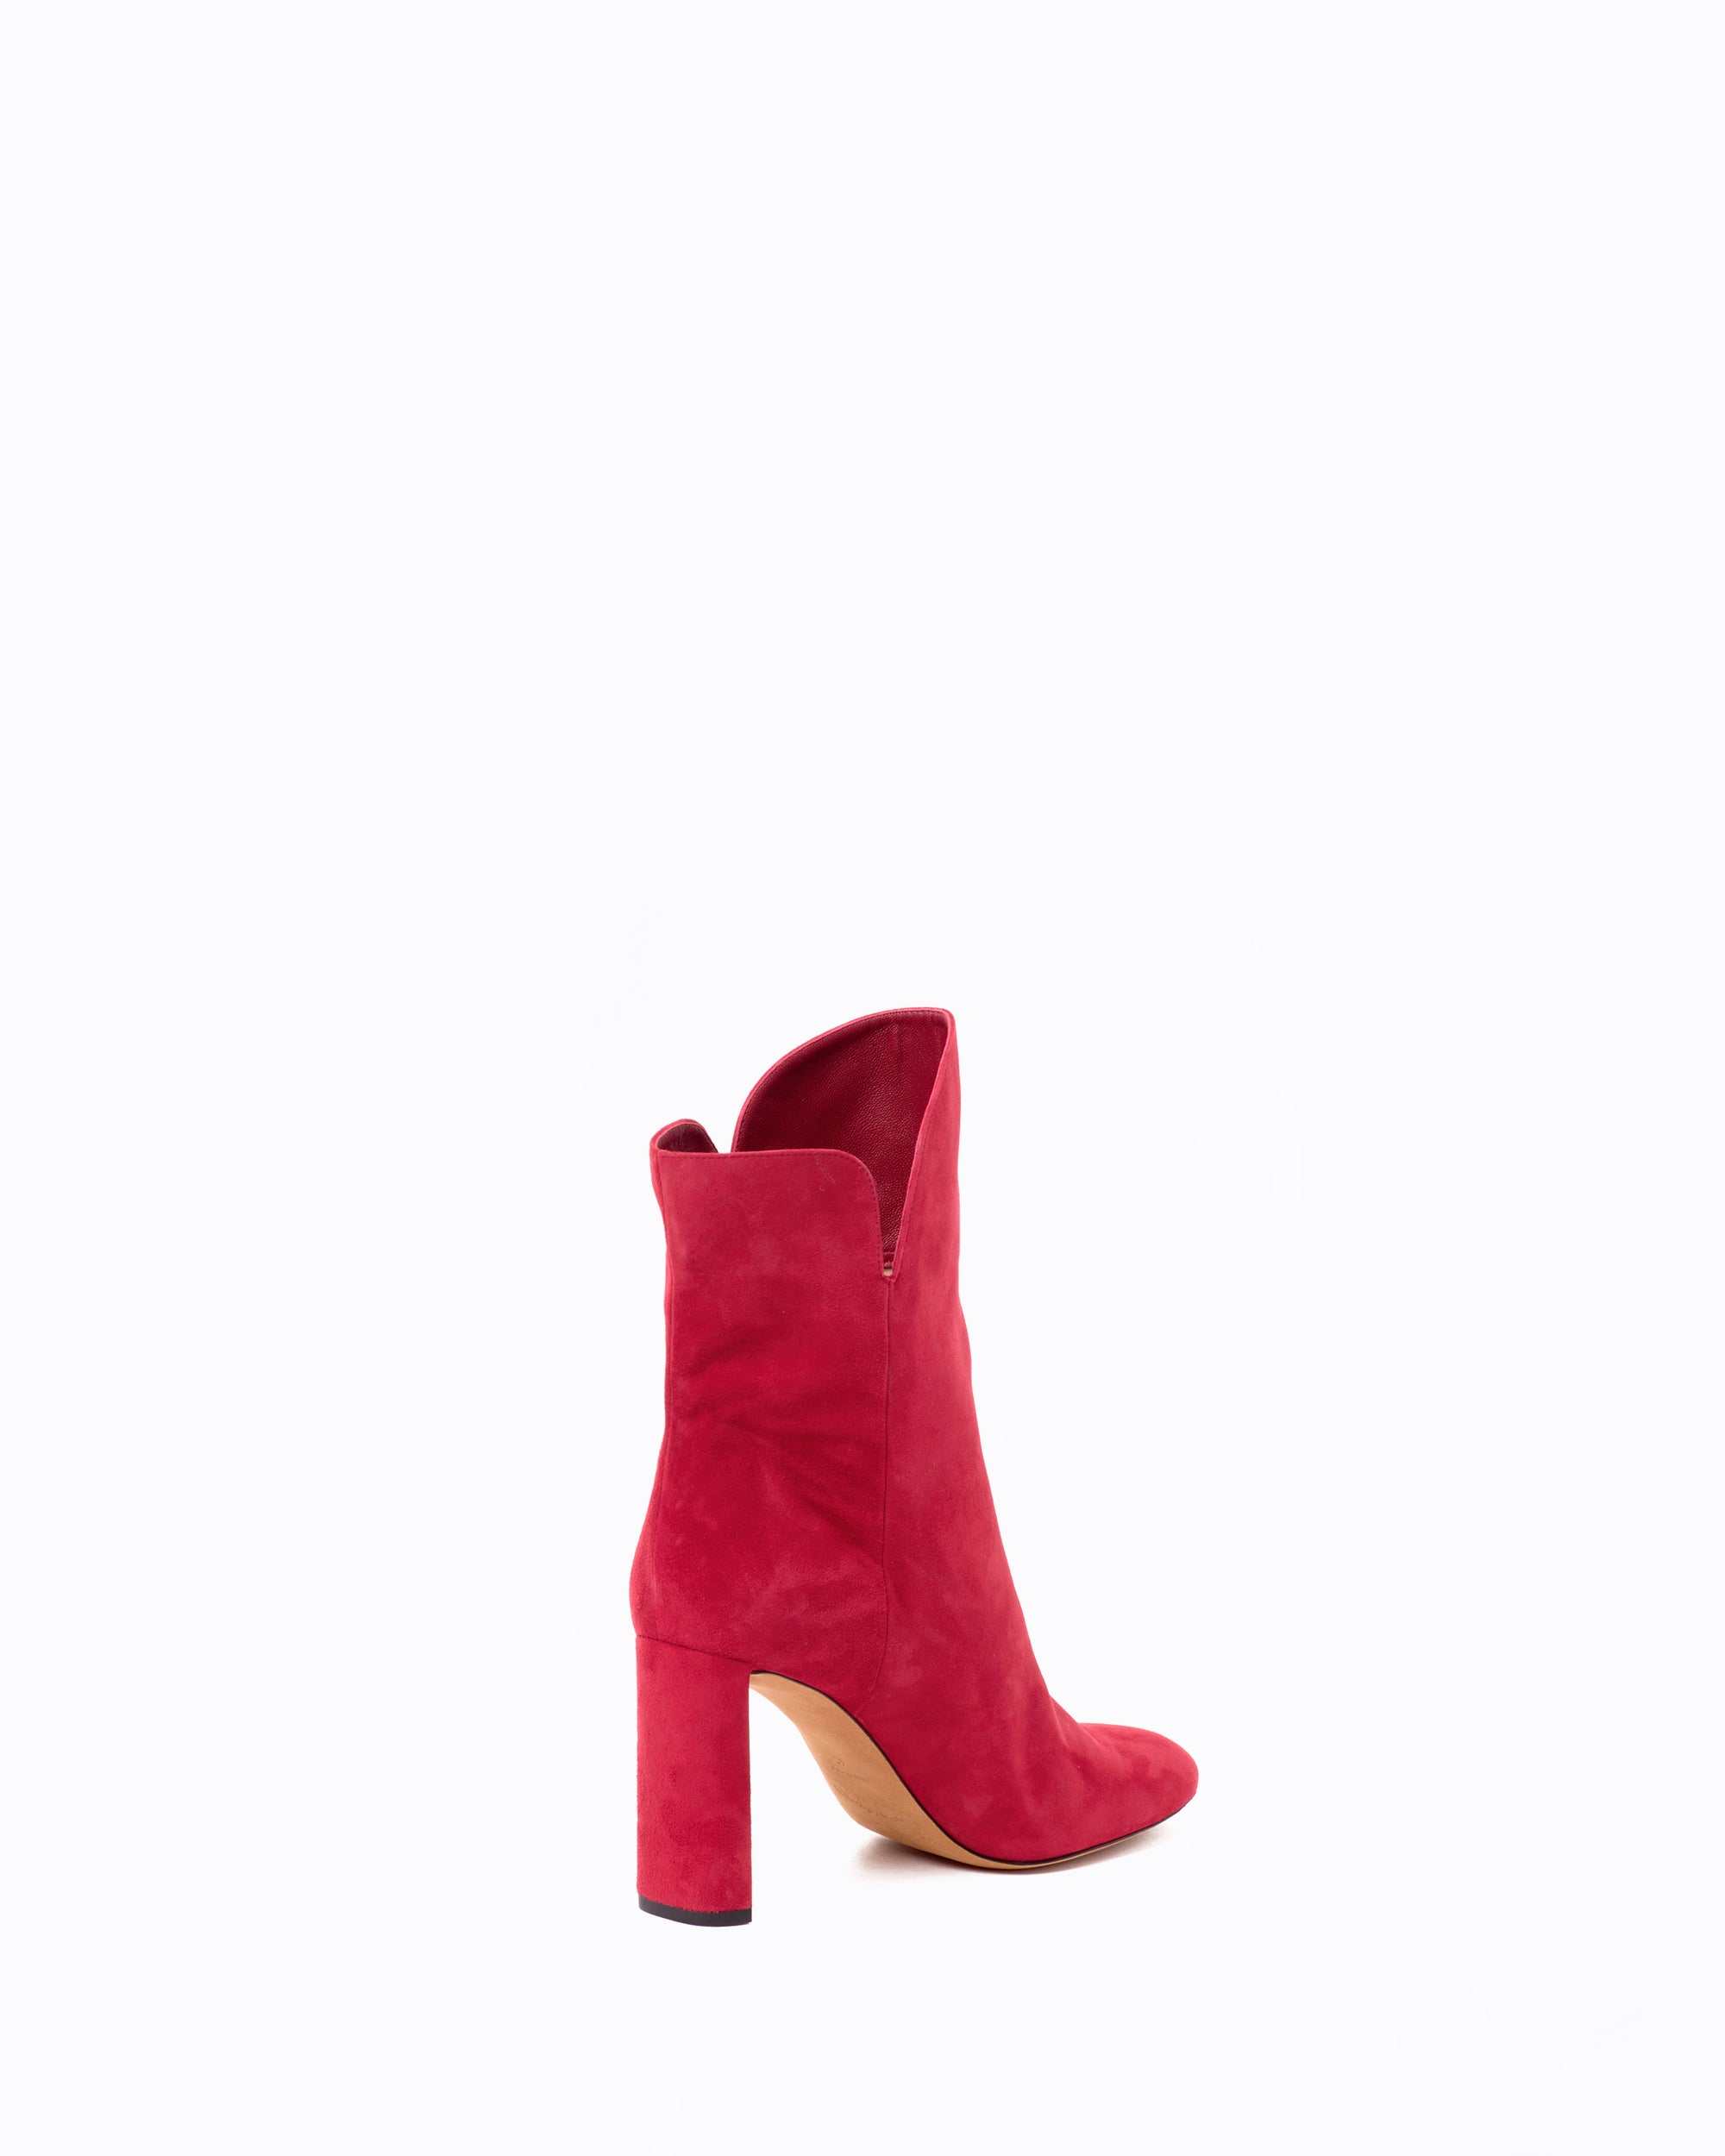 Gabriella 90 heeled boots in calfhair - Raspberry